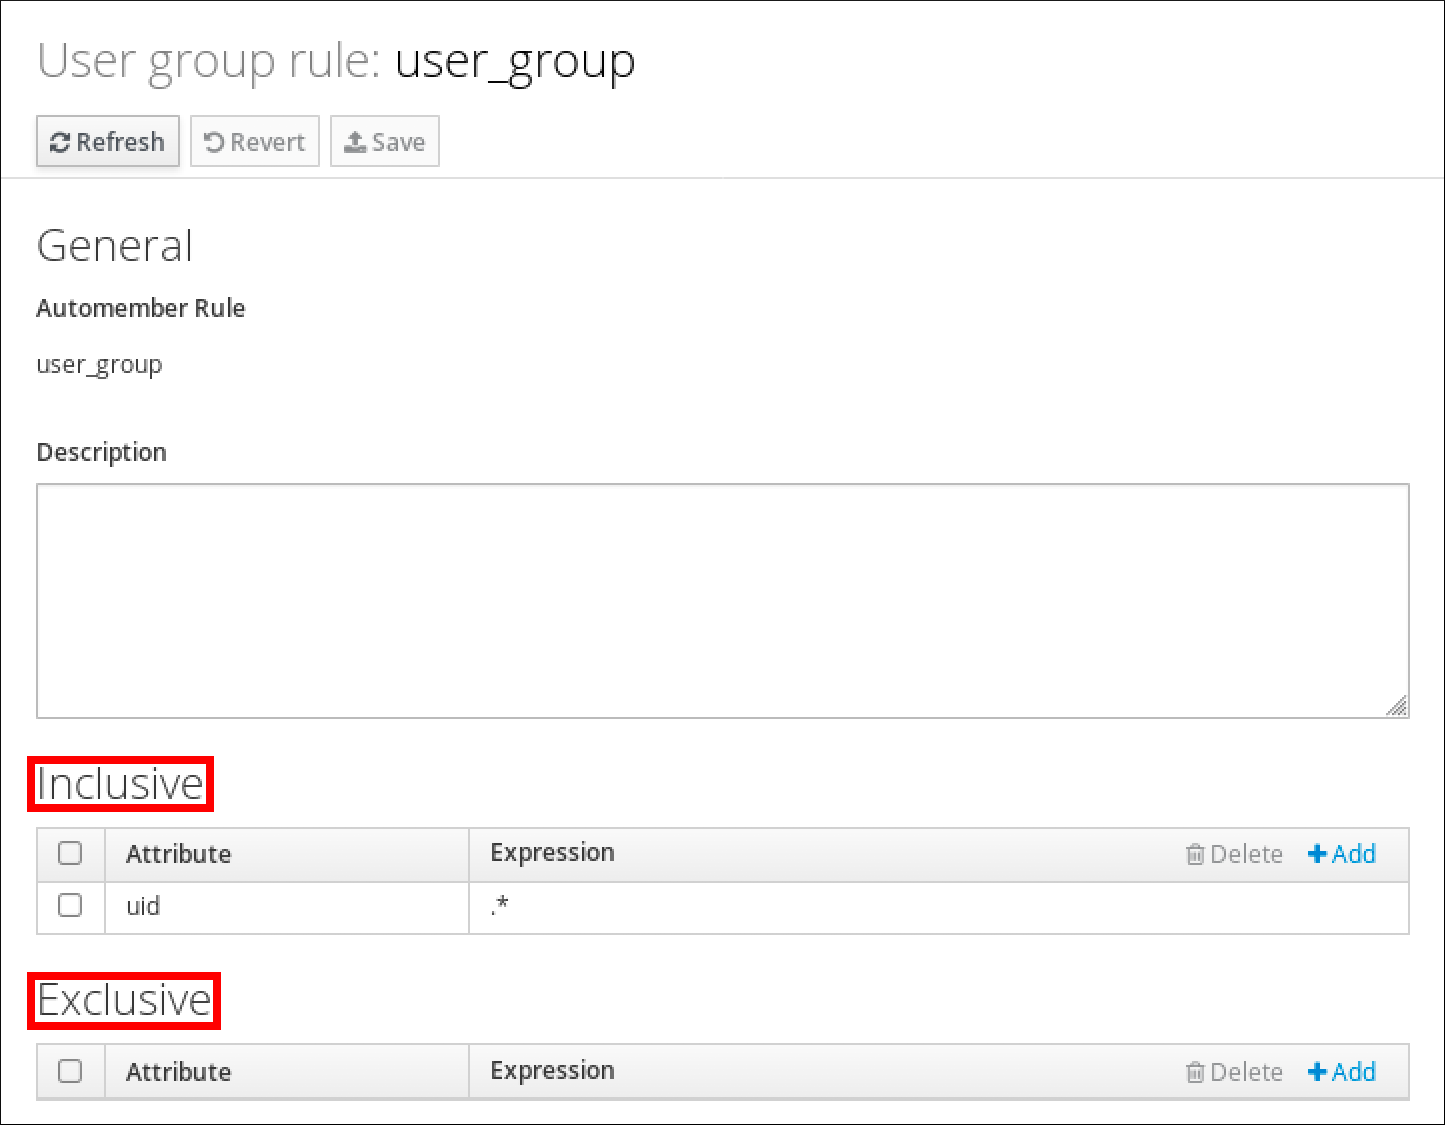 用户组规则"user_group"的详细信息的屏幕截图。 有一个"General"部分，其中显示了自动成员规则的名称和"描述"。 底部有一个"Inclusive"部分，其中有一个表，显示标有"Attribute"和"Expression"列的条目。 此表有一个条目，其中 uid 作为 Attribute，.* 作为 Expression。在底部有一个"Exclusive"部分，其中有一个表，其与"Inclusive"表结构相匹配，但没有条目。